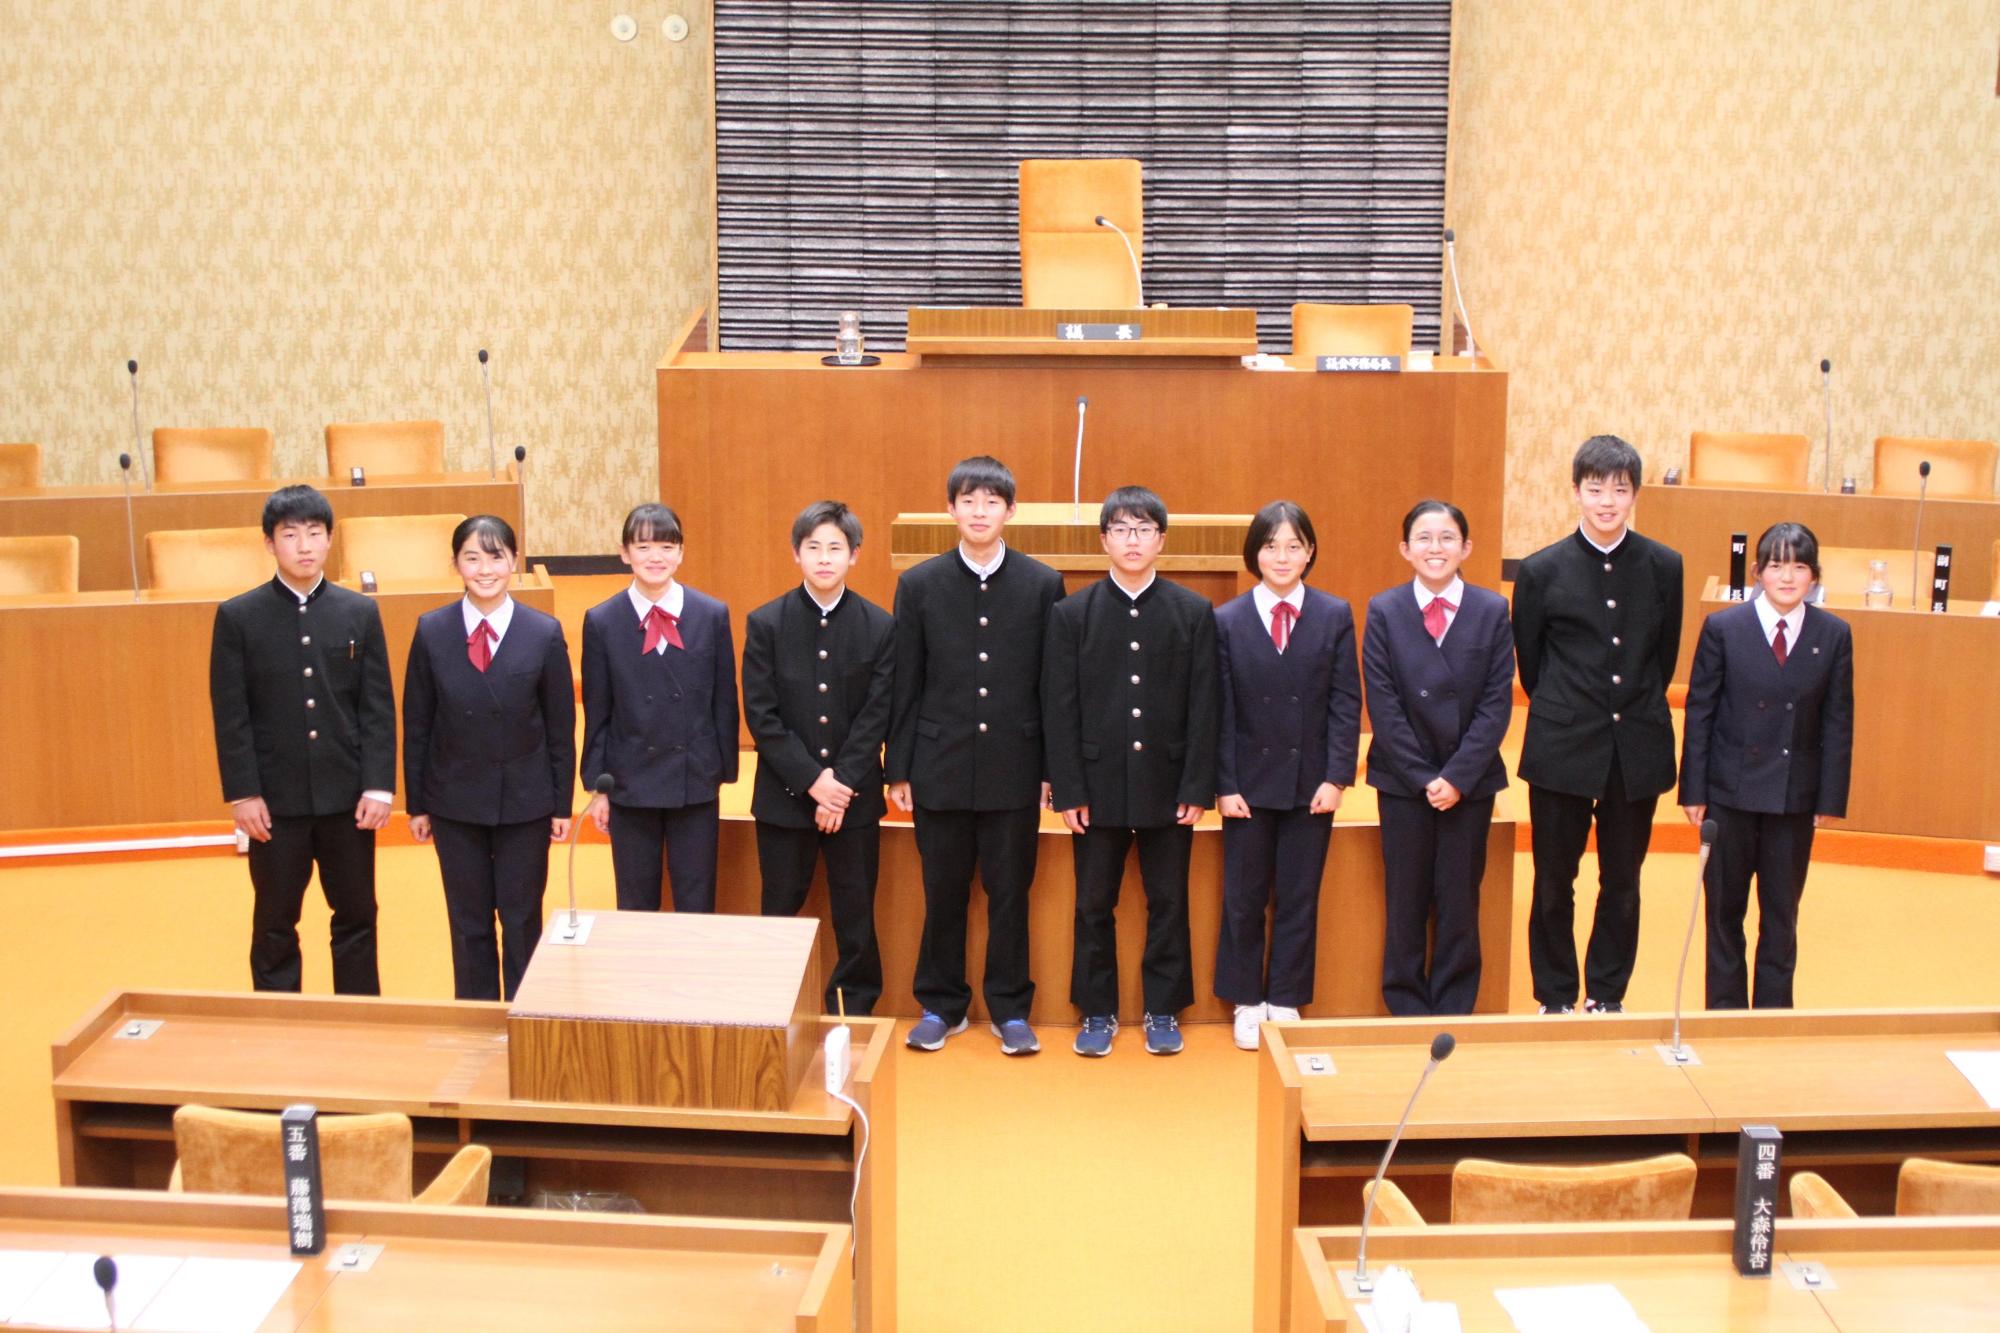 机がたくさん並んでいる辰野町役場の議場で中学生10人が並んで笑顔を向けている写真